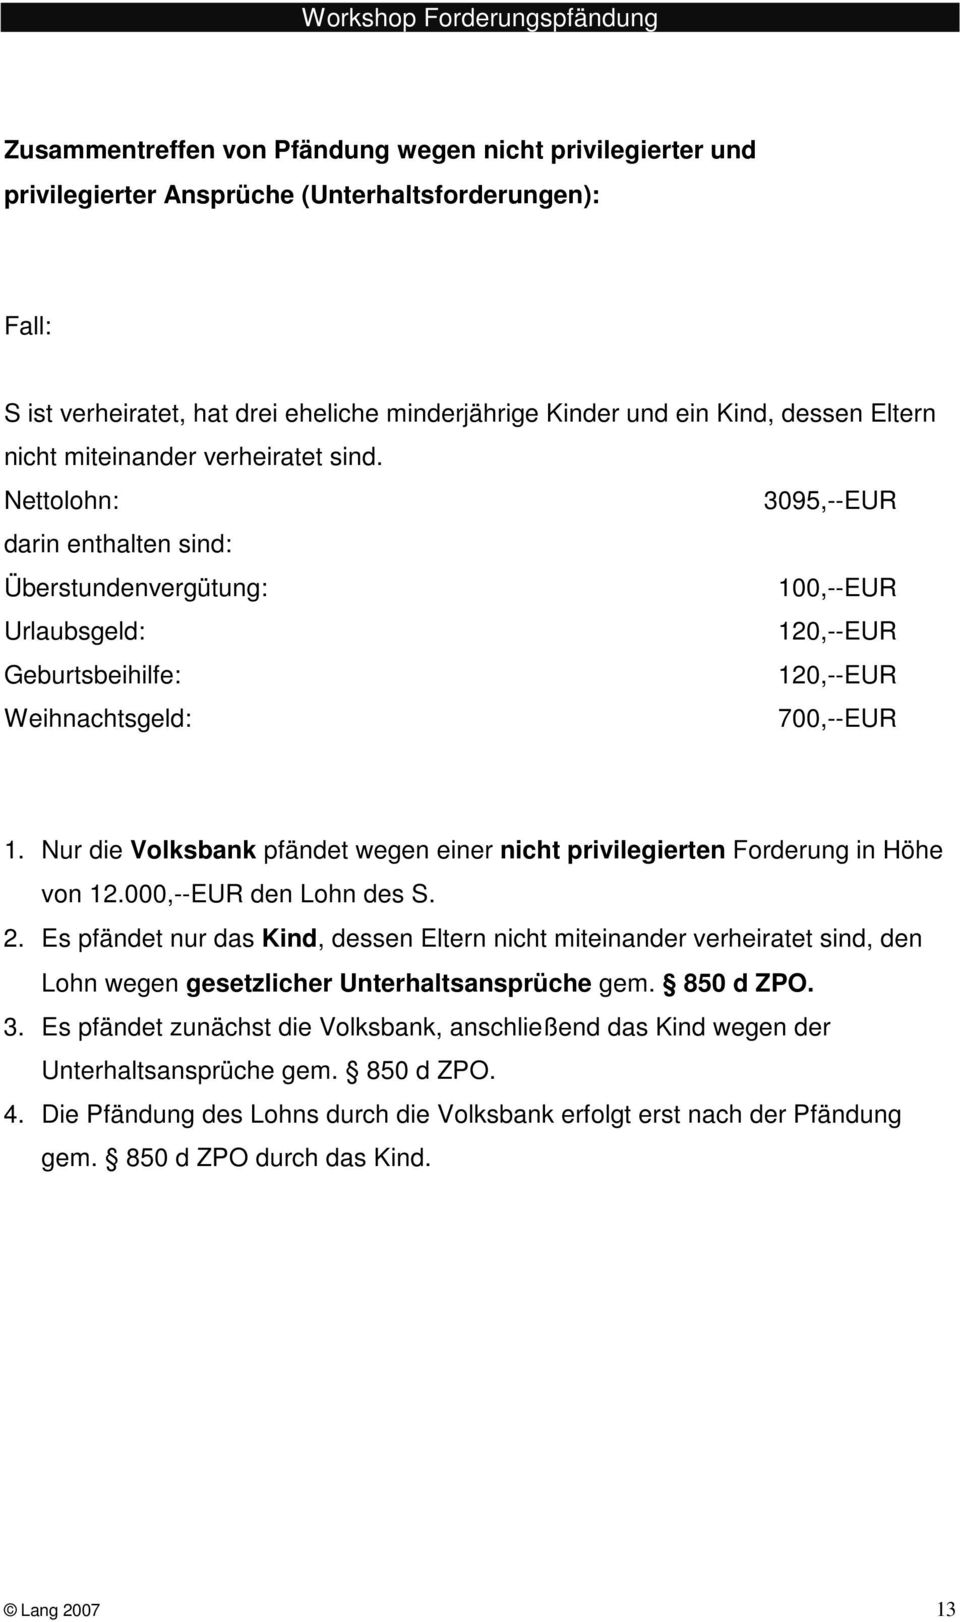 Nur die Volksbank pfändet wegen einer nicht privilegierten Forderung in Höhe von 12.000,--EUR den Lohn des S. 2.